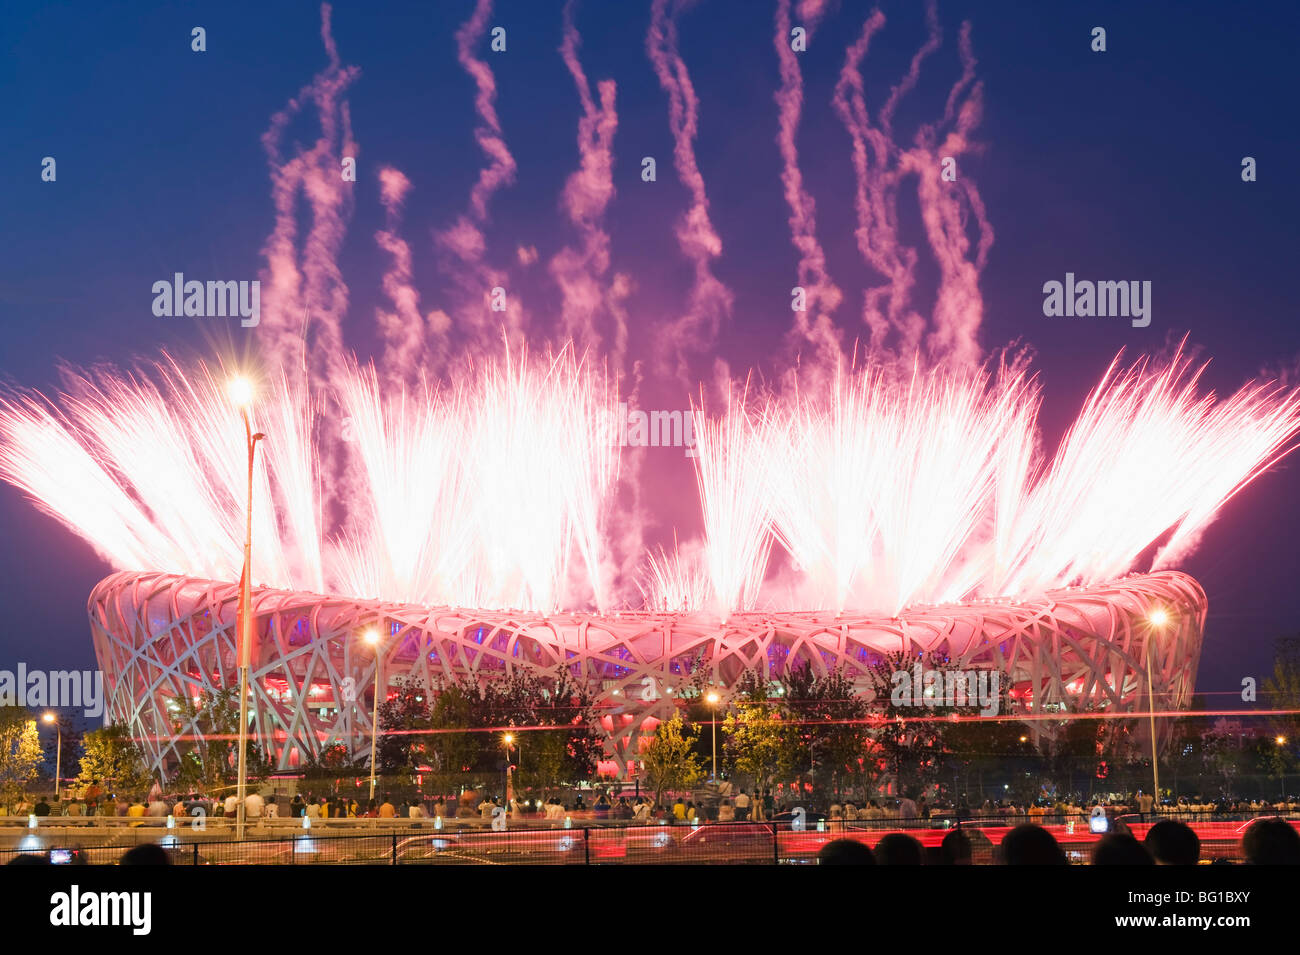 Feuerwerk auf dem Birds Nest Nationalstadion während der Eröffnungsfeier der 2008 Olympische Spiele, Peking, China, Asien Stockfoto